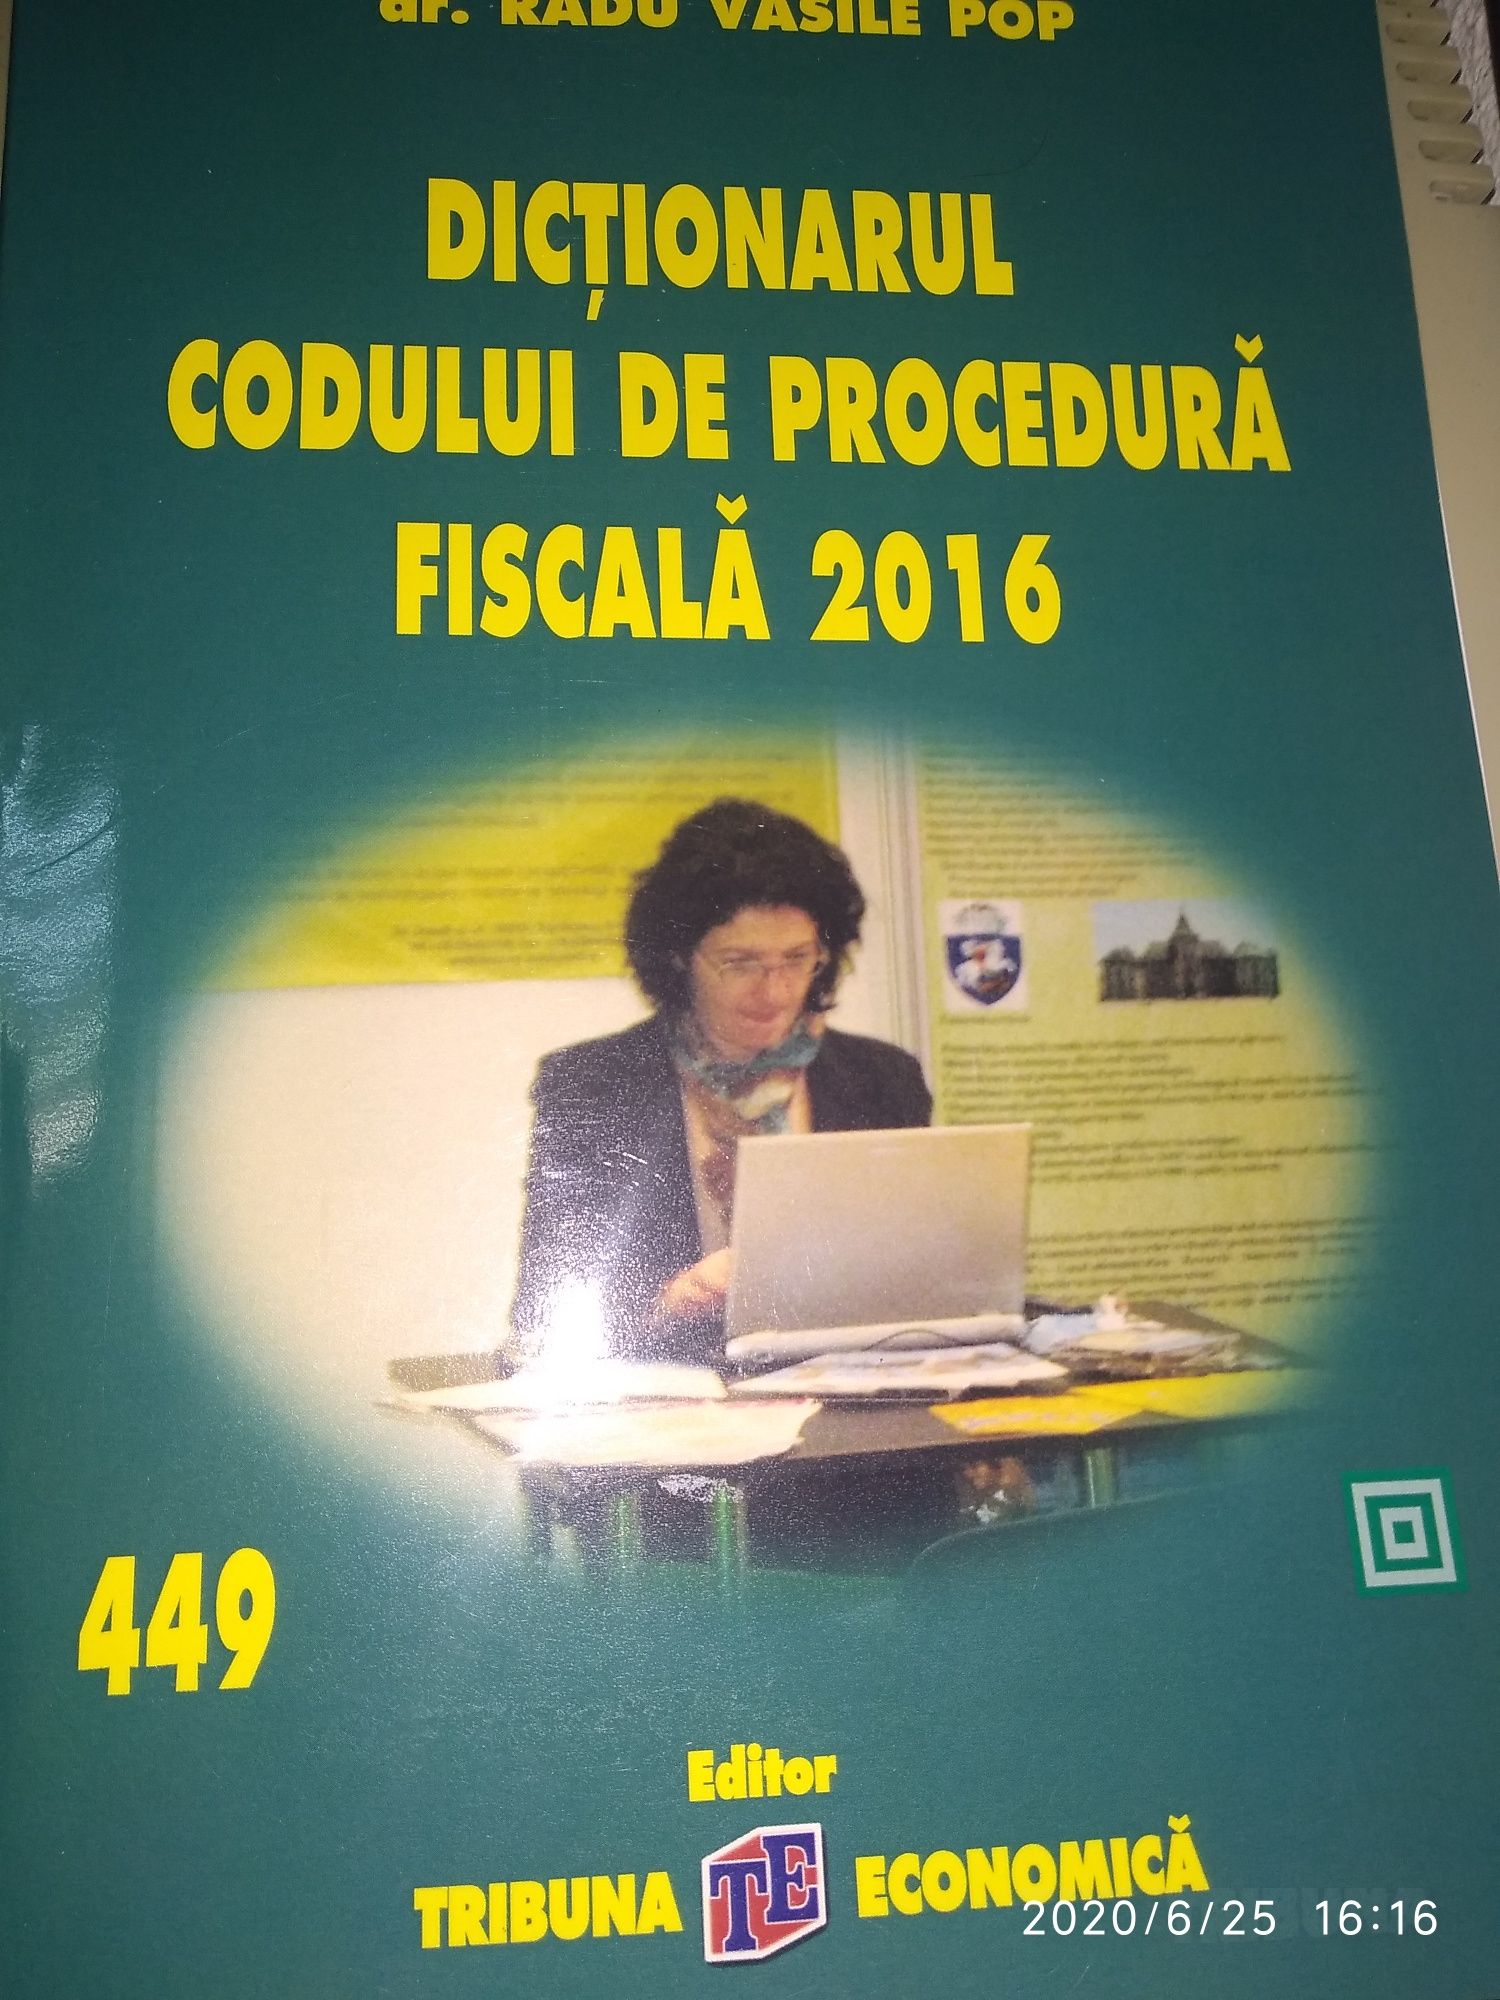 Dictionarul Codului de Procedura Fiscala-2016